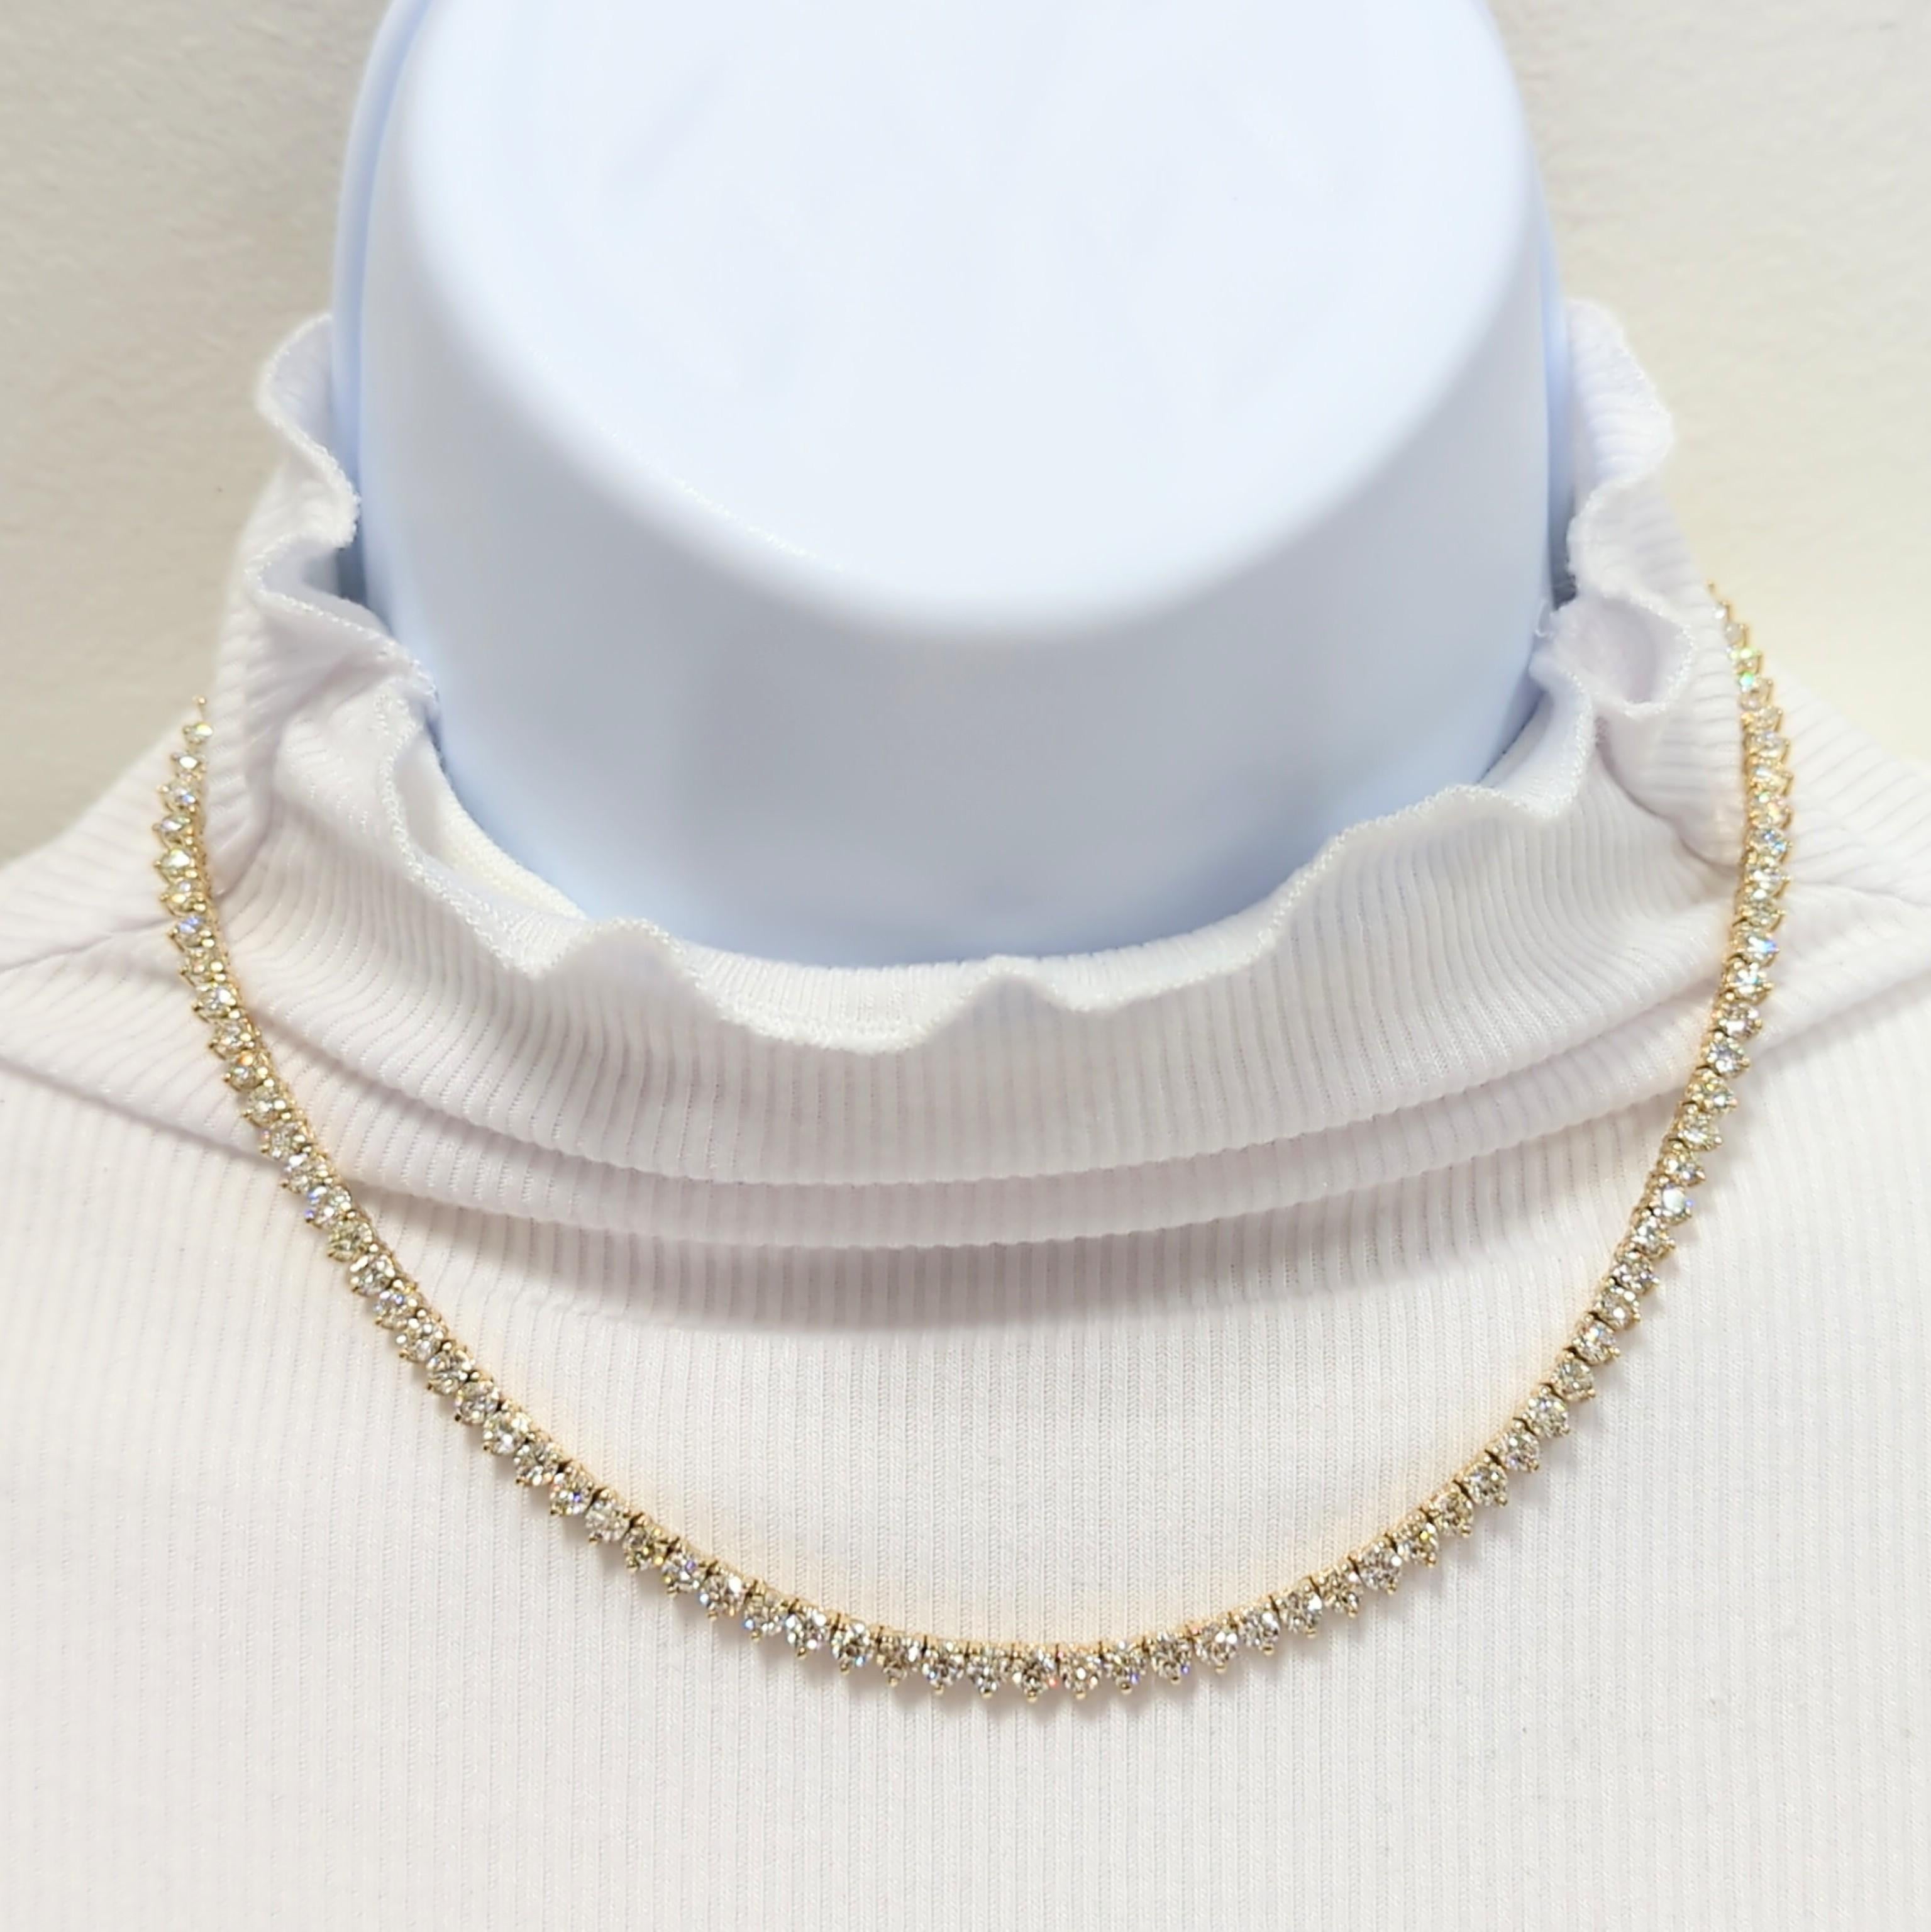 Wunderschöne 17.65 ct. weiße runde Diamanten.  Handgefertigt in 14k Gelbgold.  Die Länge der Halskette beträgt 16